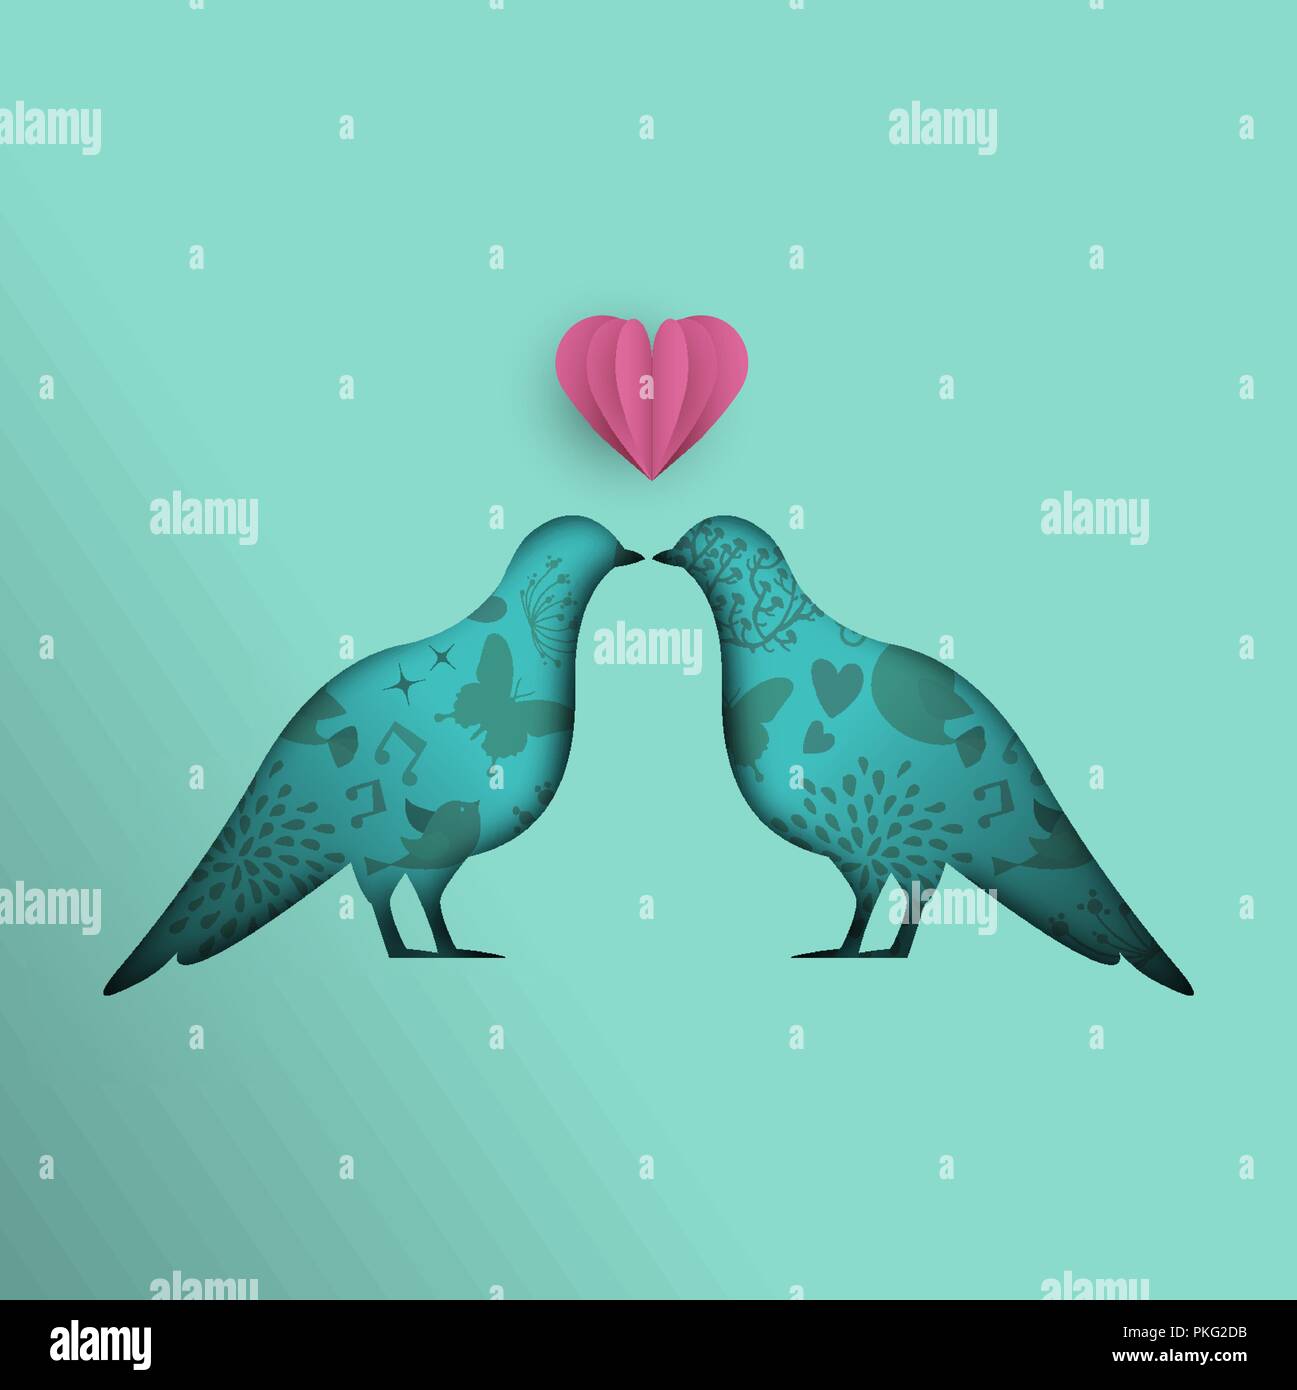 Papier schneiden Tauben Abbildung, ausschnitt Vogel Tier mit 3d rosa Herzen für Frieden, Hoffnung und Liebe. EPS 10 Vektor. Stock Vektor